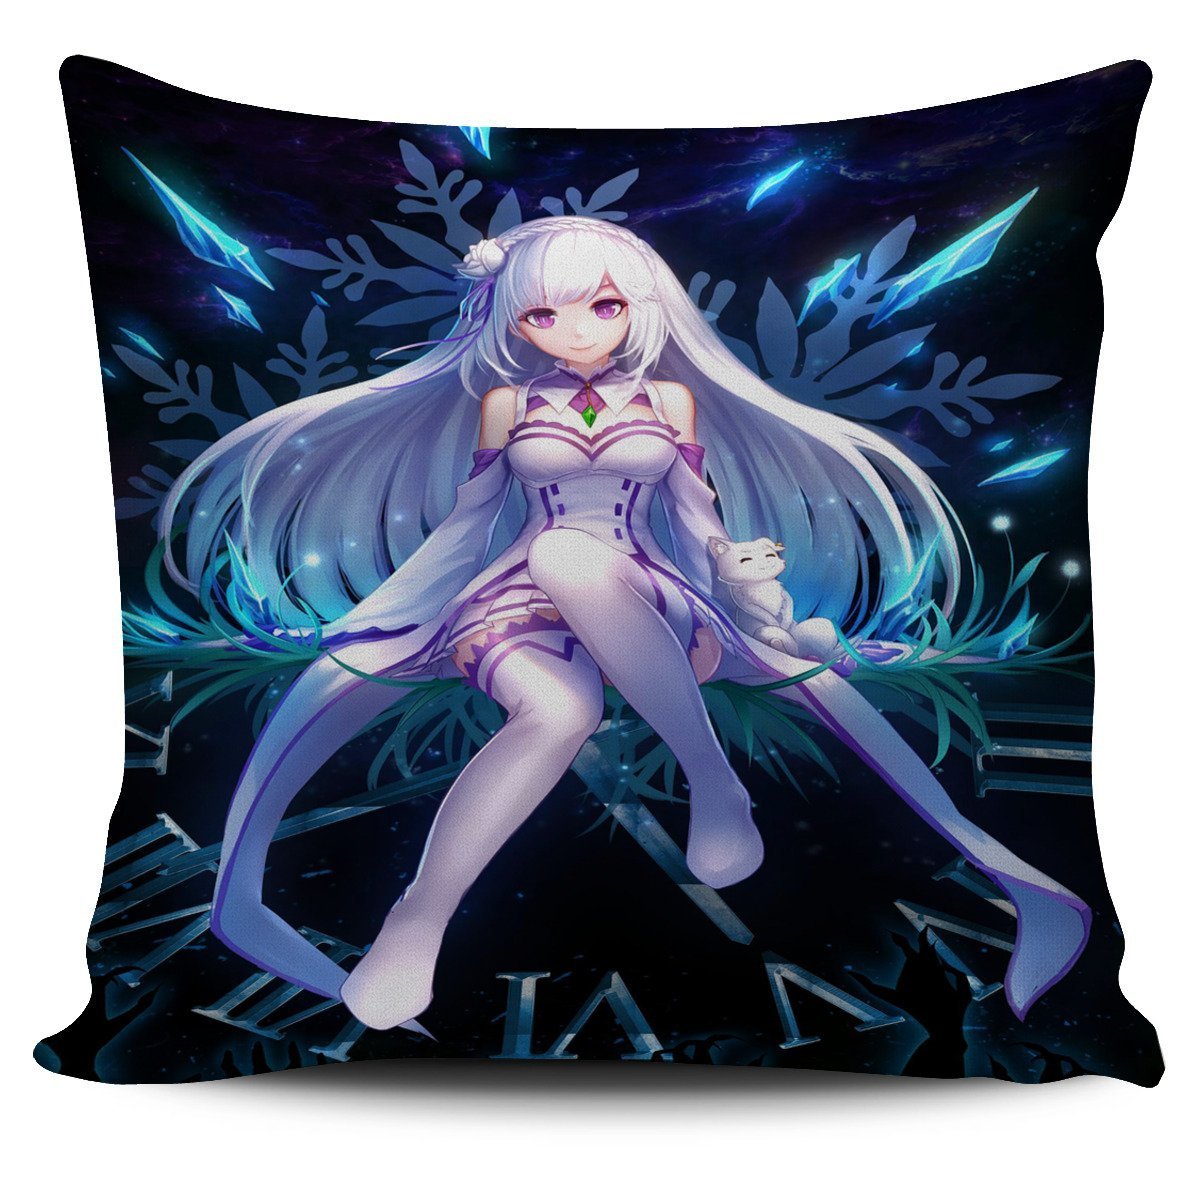 Emilia Re:Zero Pillow Cover 1